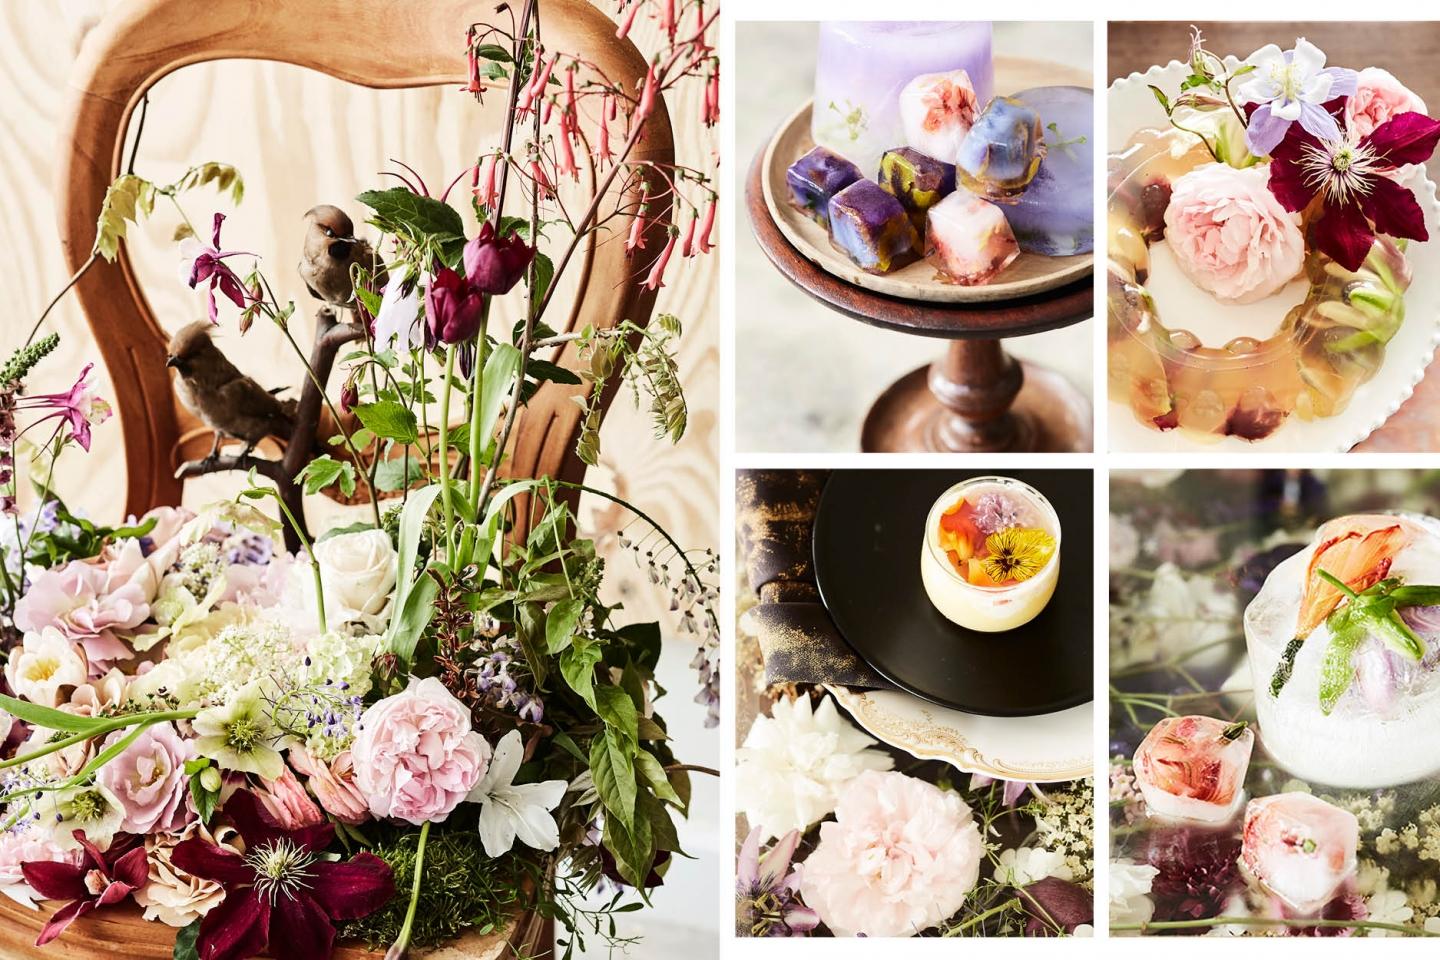 這些優雅美麗的可食用花卉小冰點為餐桌注滿姿彩